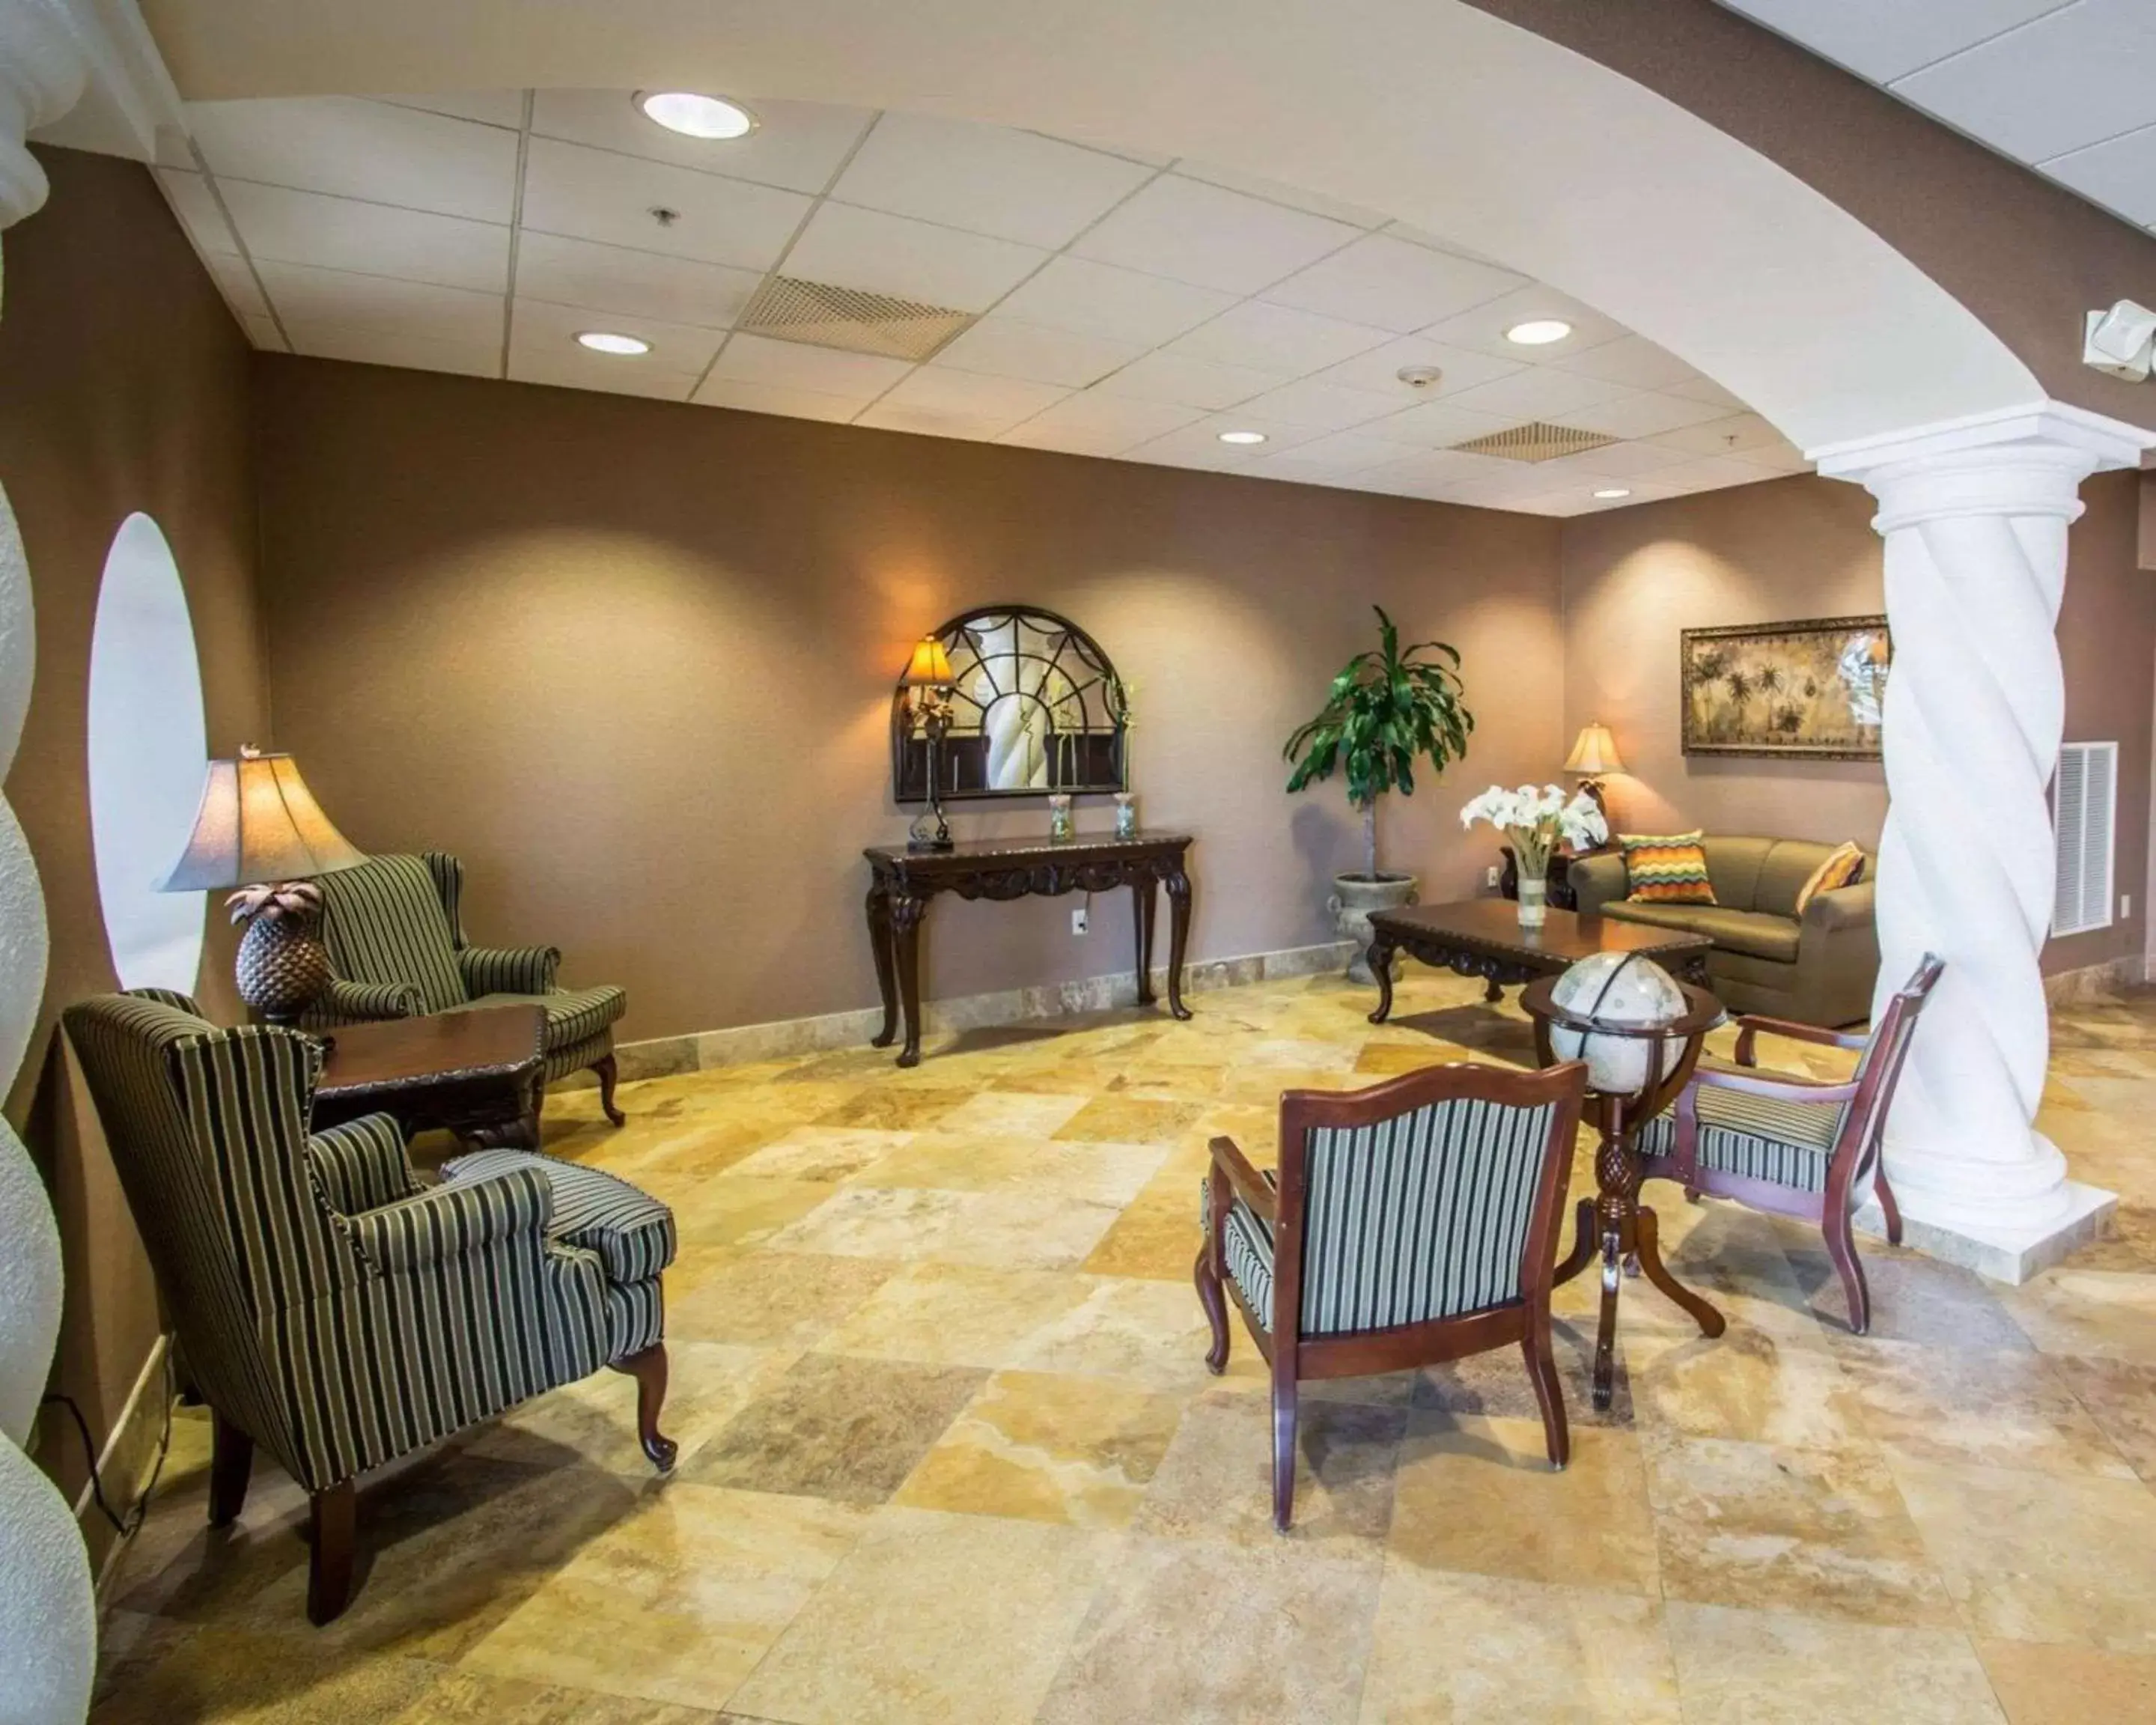 Lobby or reception, Lobby/Reception in Comfort Inn & Suites Jupiter I-95